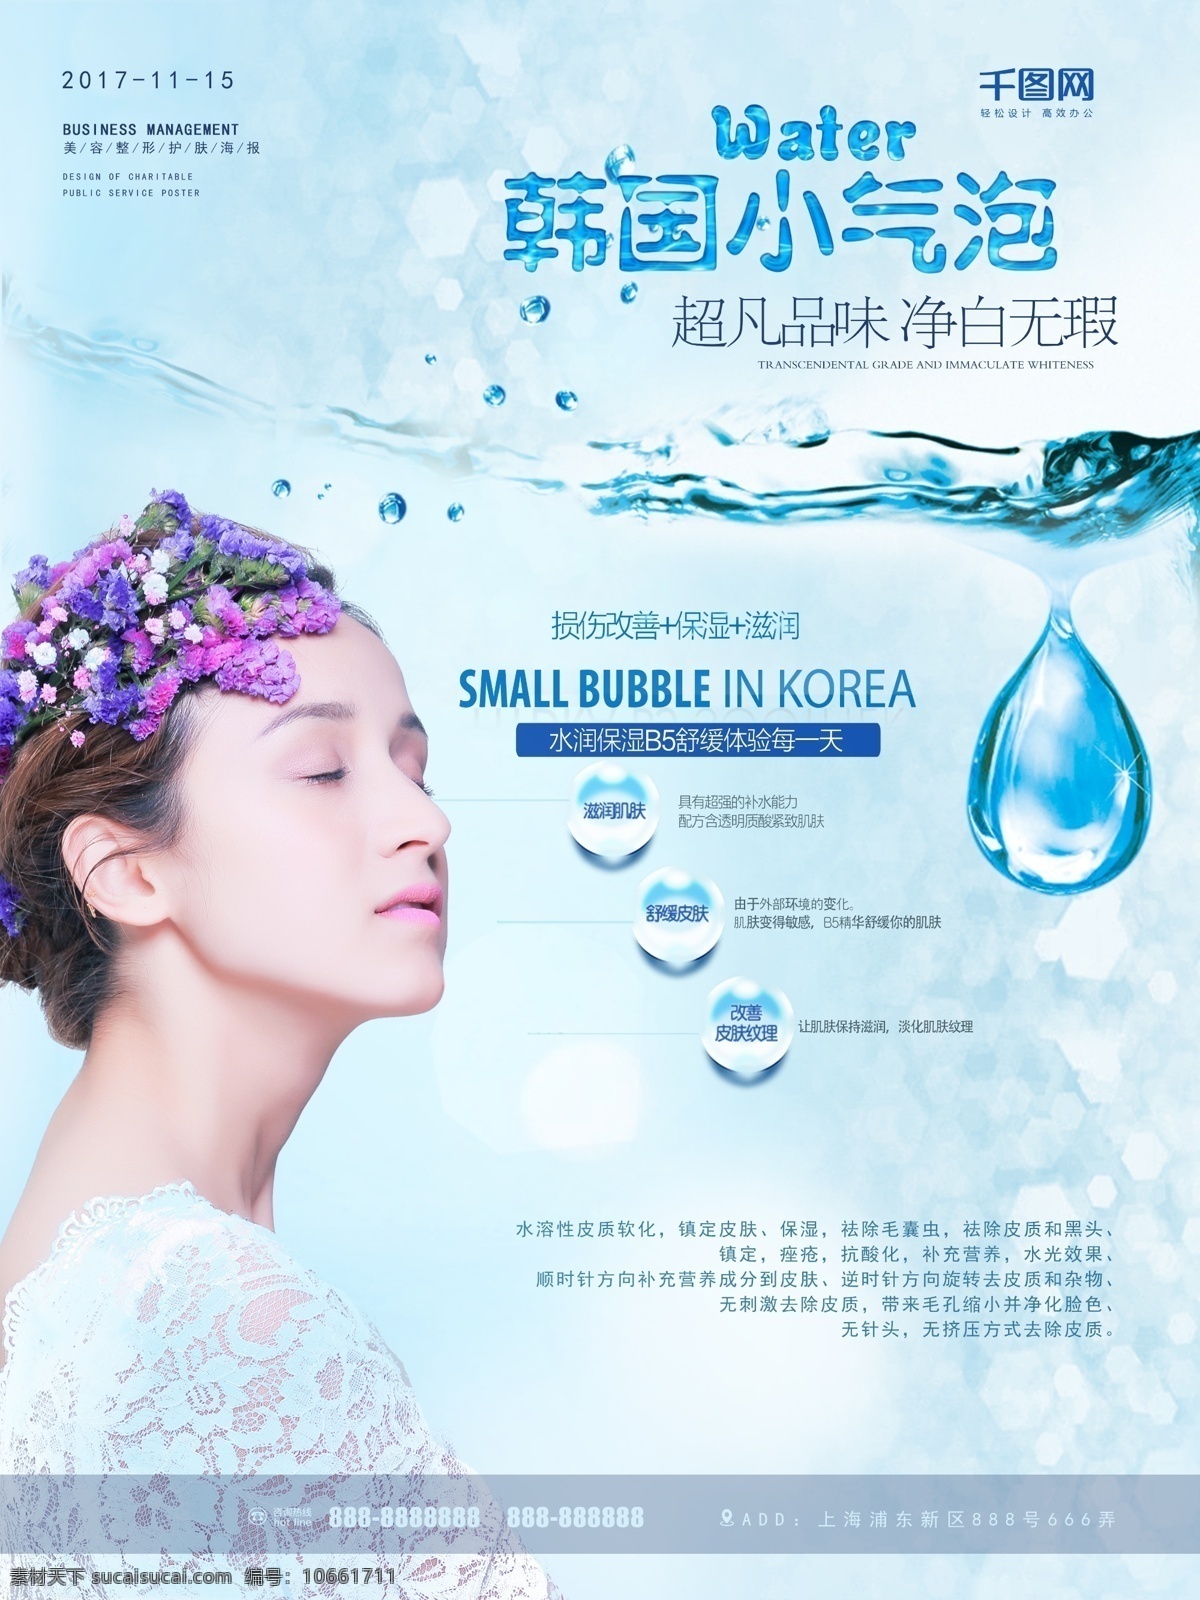 美女 水滴 蓝色 简约 韩国 小 气泡 美容 宣传海报 韩国小气泡